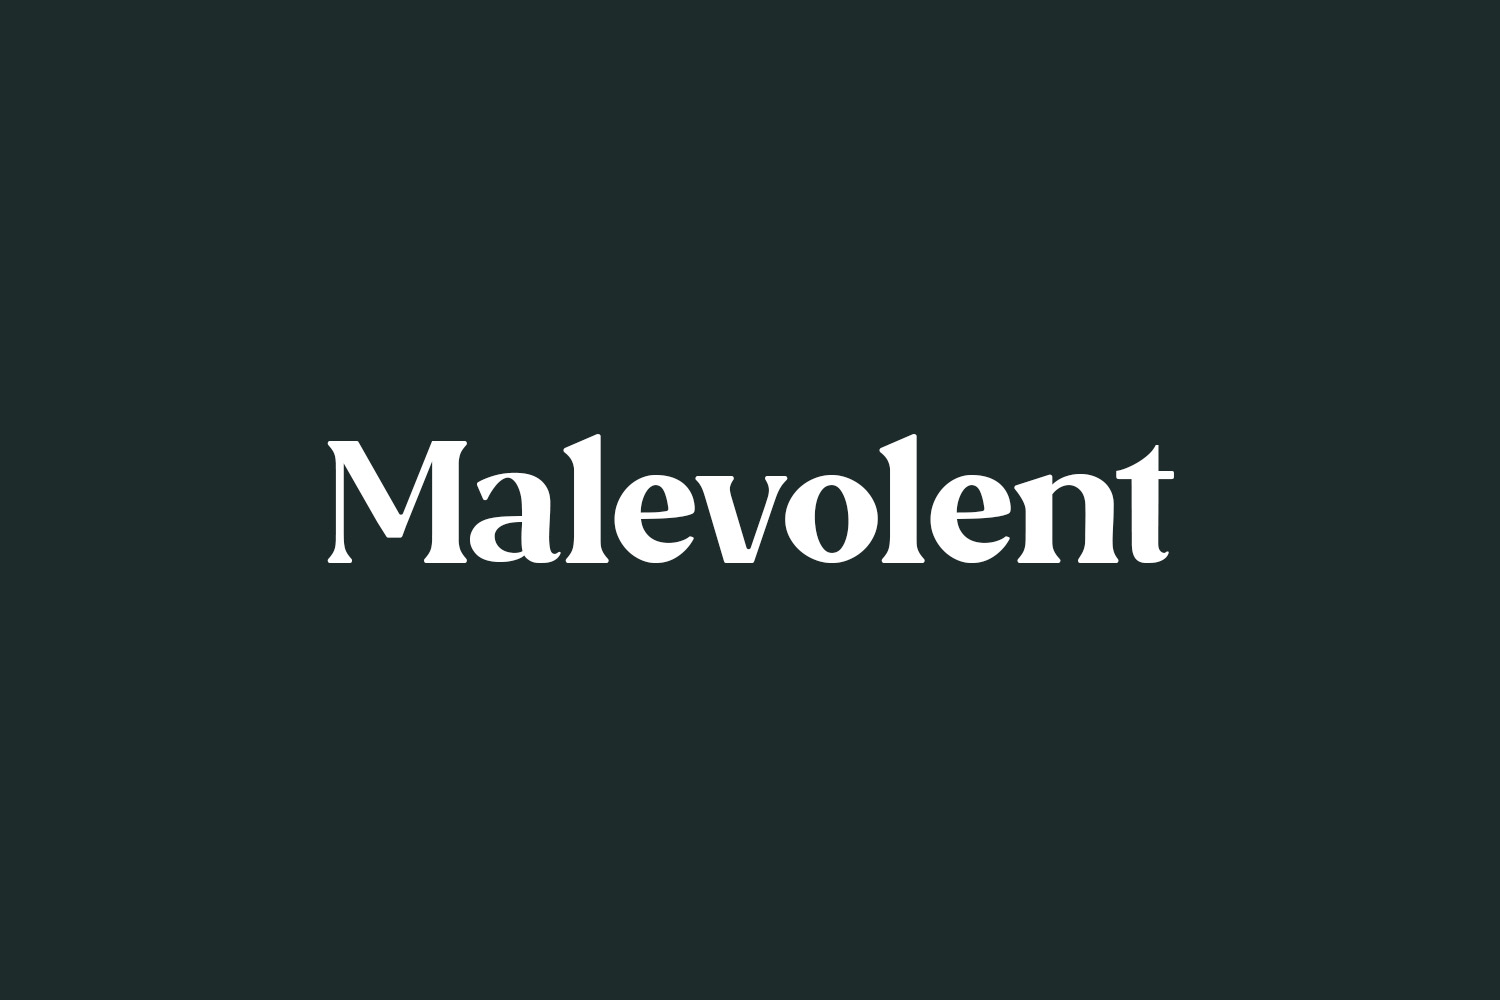 Malevolent Free Font